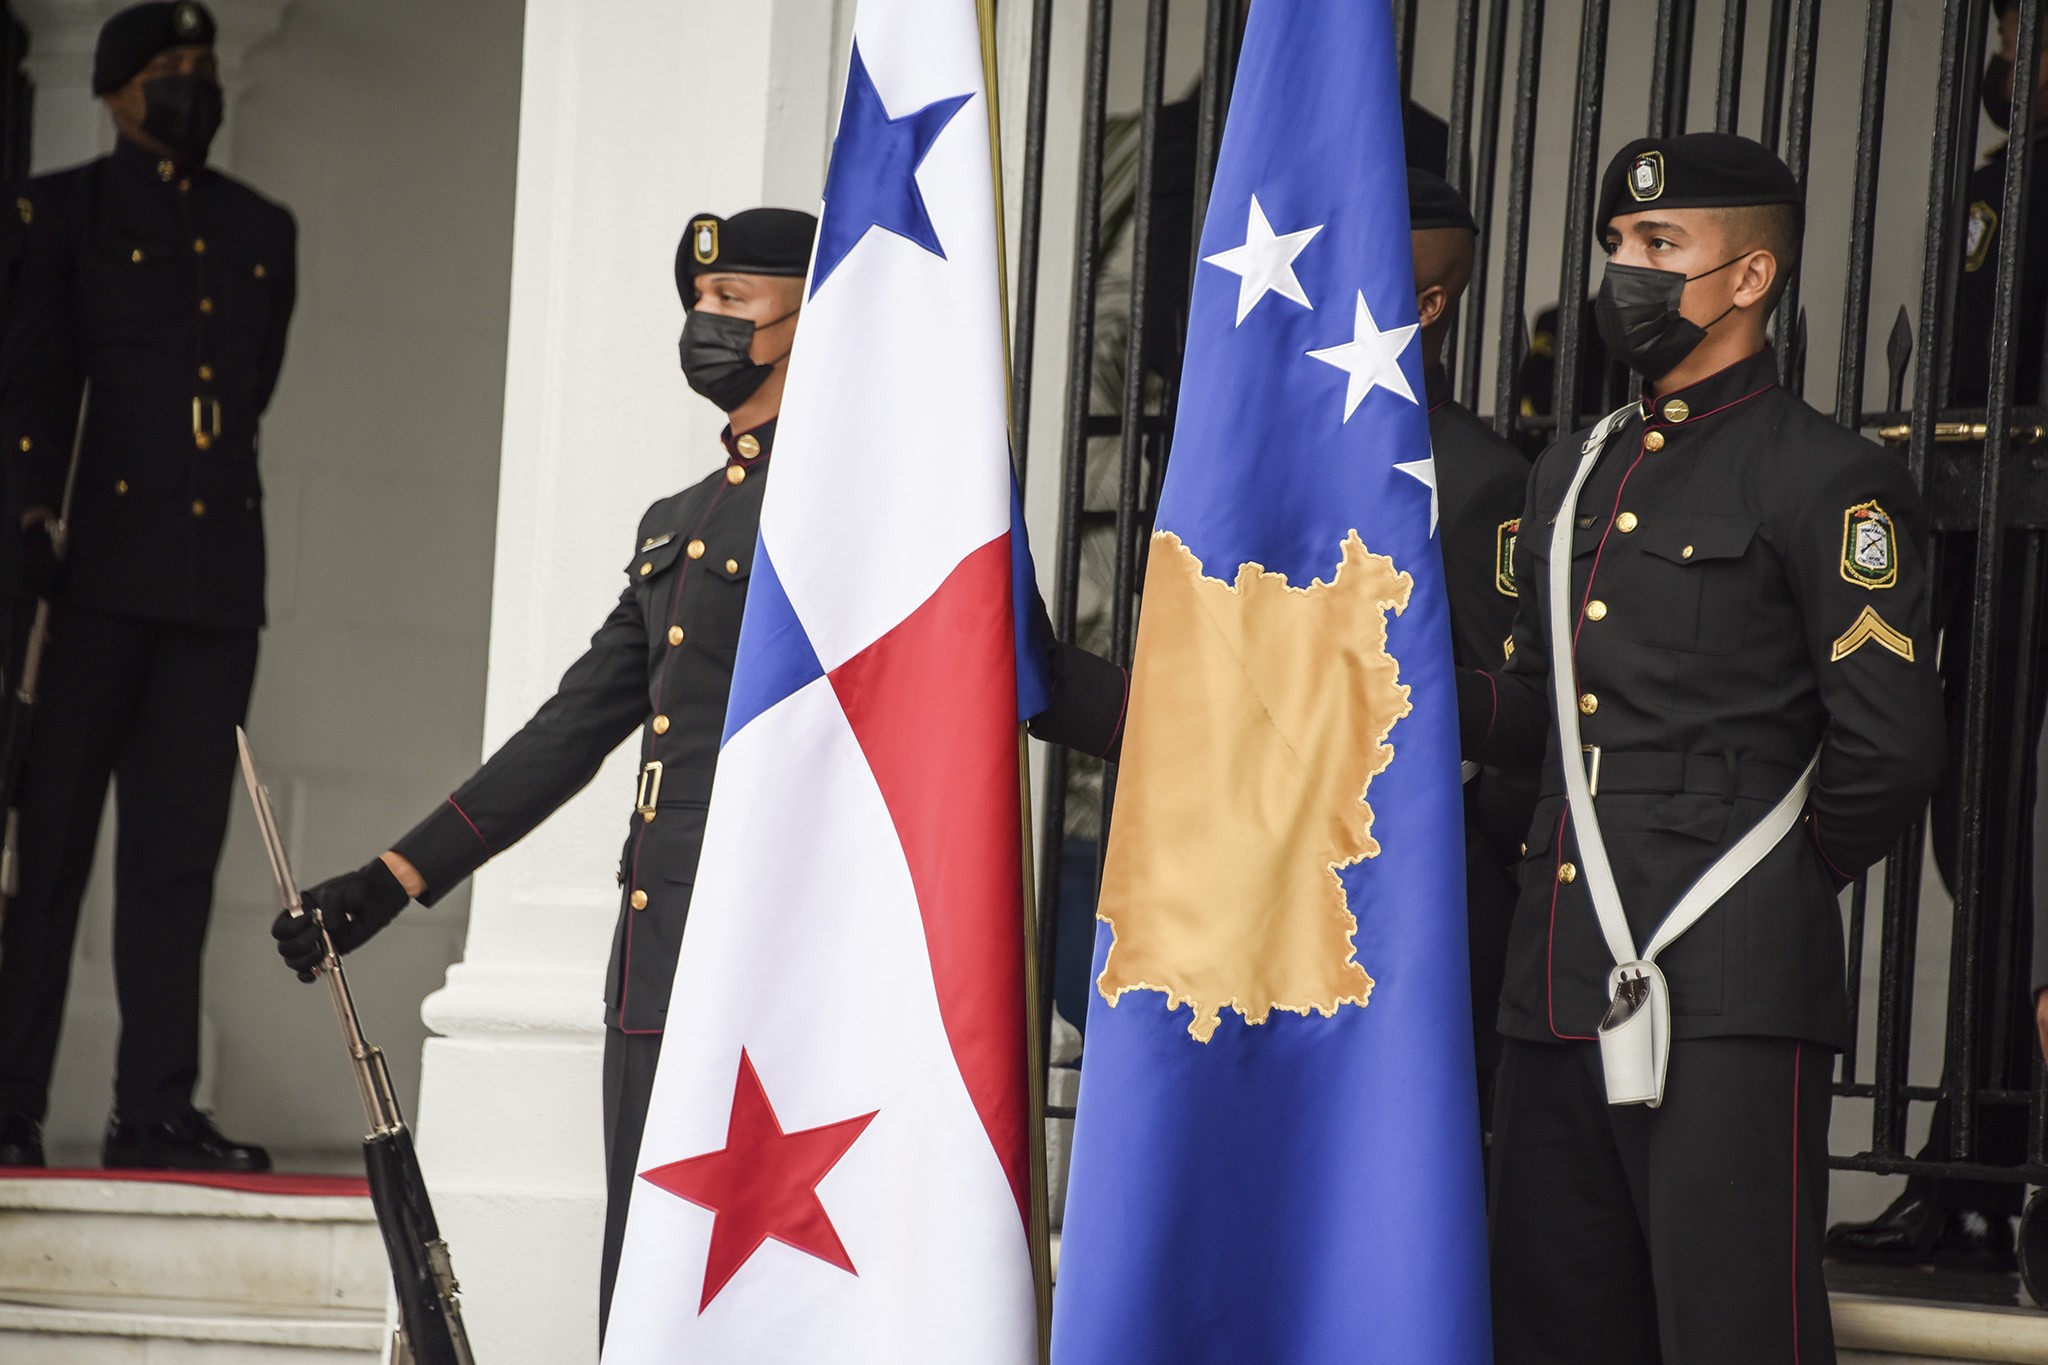 Presidentja Osmani u prit nga presidenti i Panamasë Laurentino Cortizo 